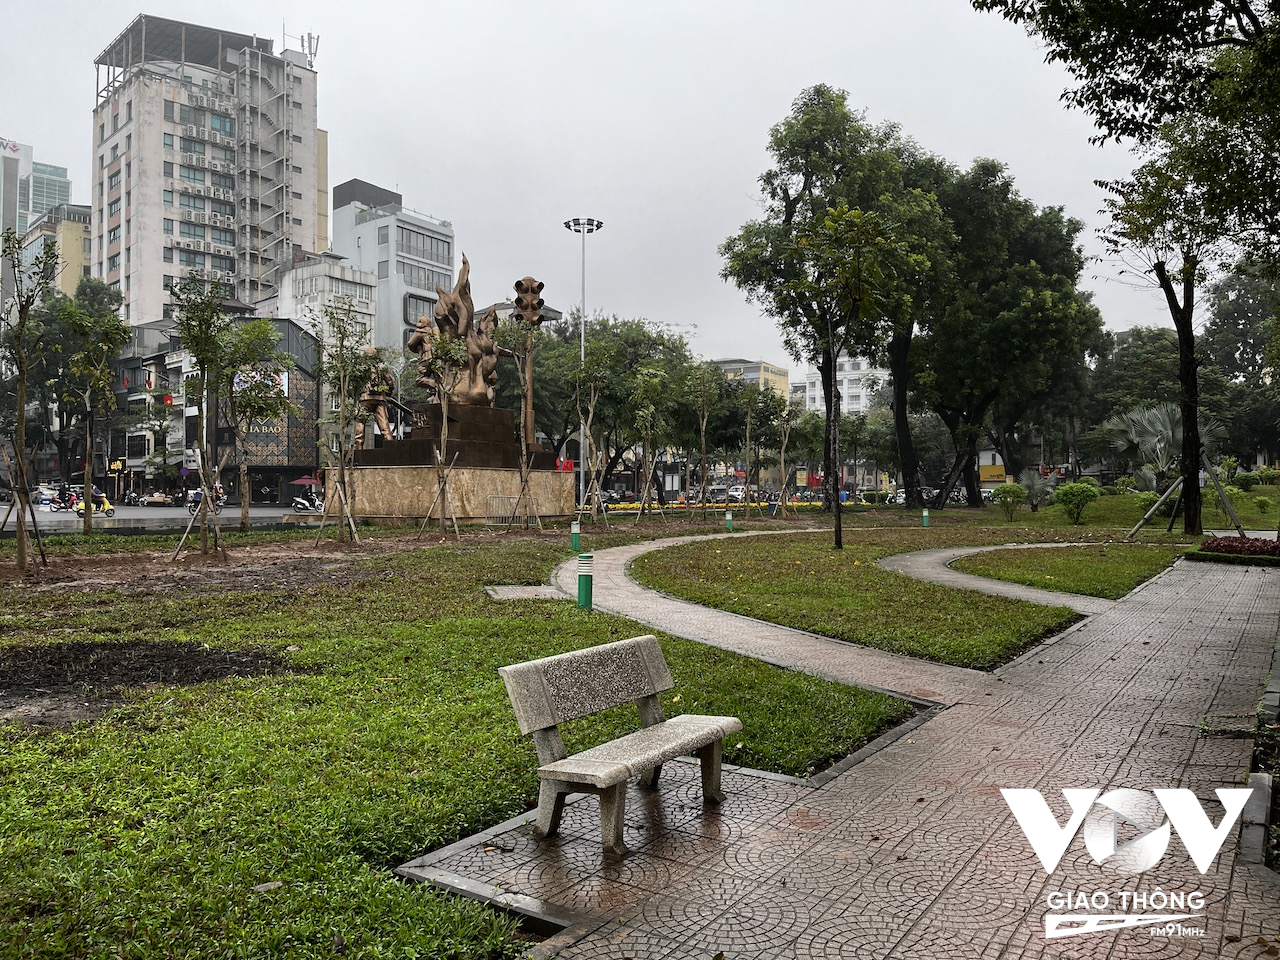 Việc dỡ bỏ hàng rào có thể nói là quyết định đúng đắn của thành phố để trả lại đúng nghĩa cho từ 'công viên' - trong điều kiện thành phố đang rất thiếu những không gian công cộng phục vụ nhu cầu vui chơi của người dân.